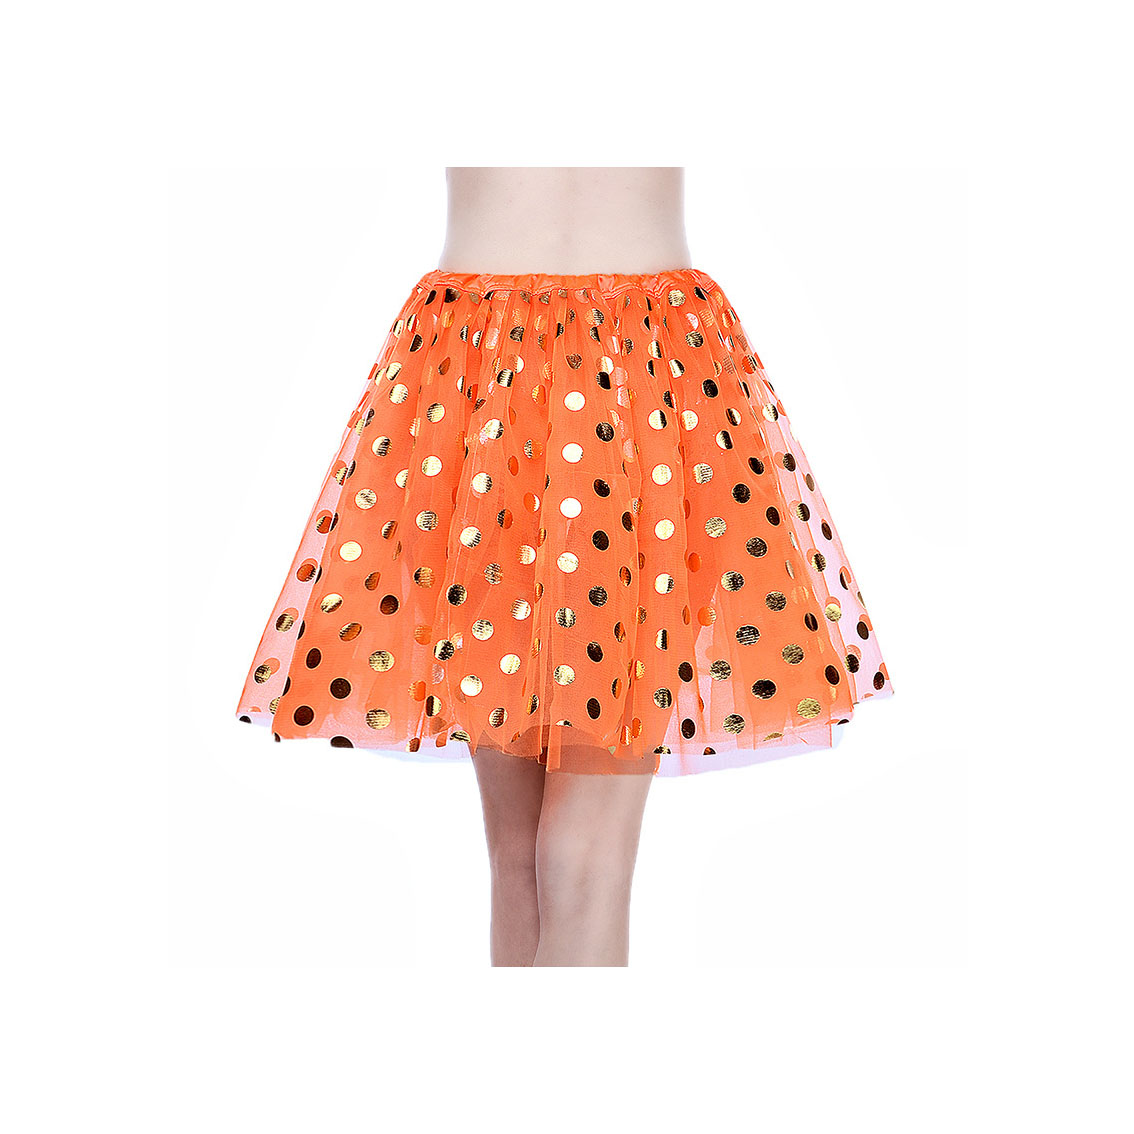 Adult Tutu Skirt Sequin Gilding Polka Dot 3 Layers Party Dance Ballet Pettiskirt Tulle Girl Mini Skirt orange+gold